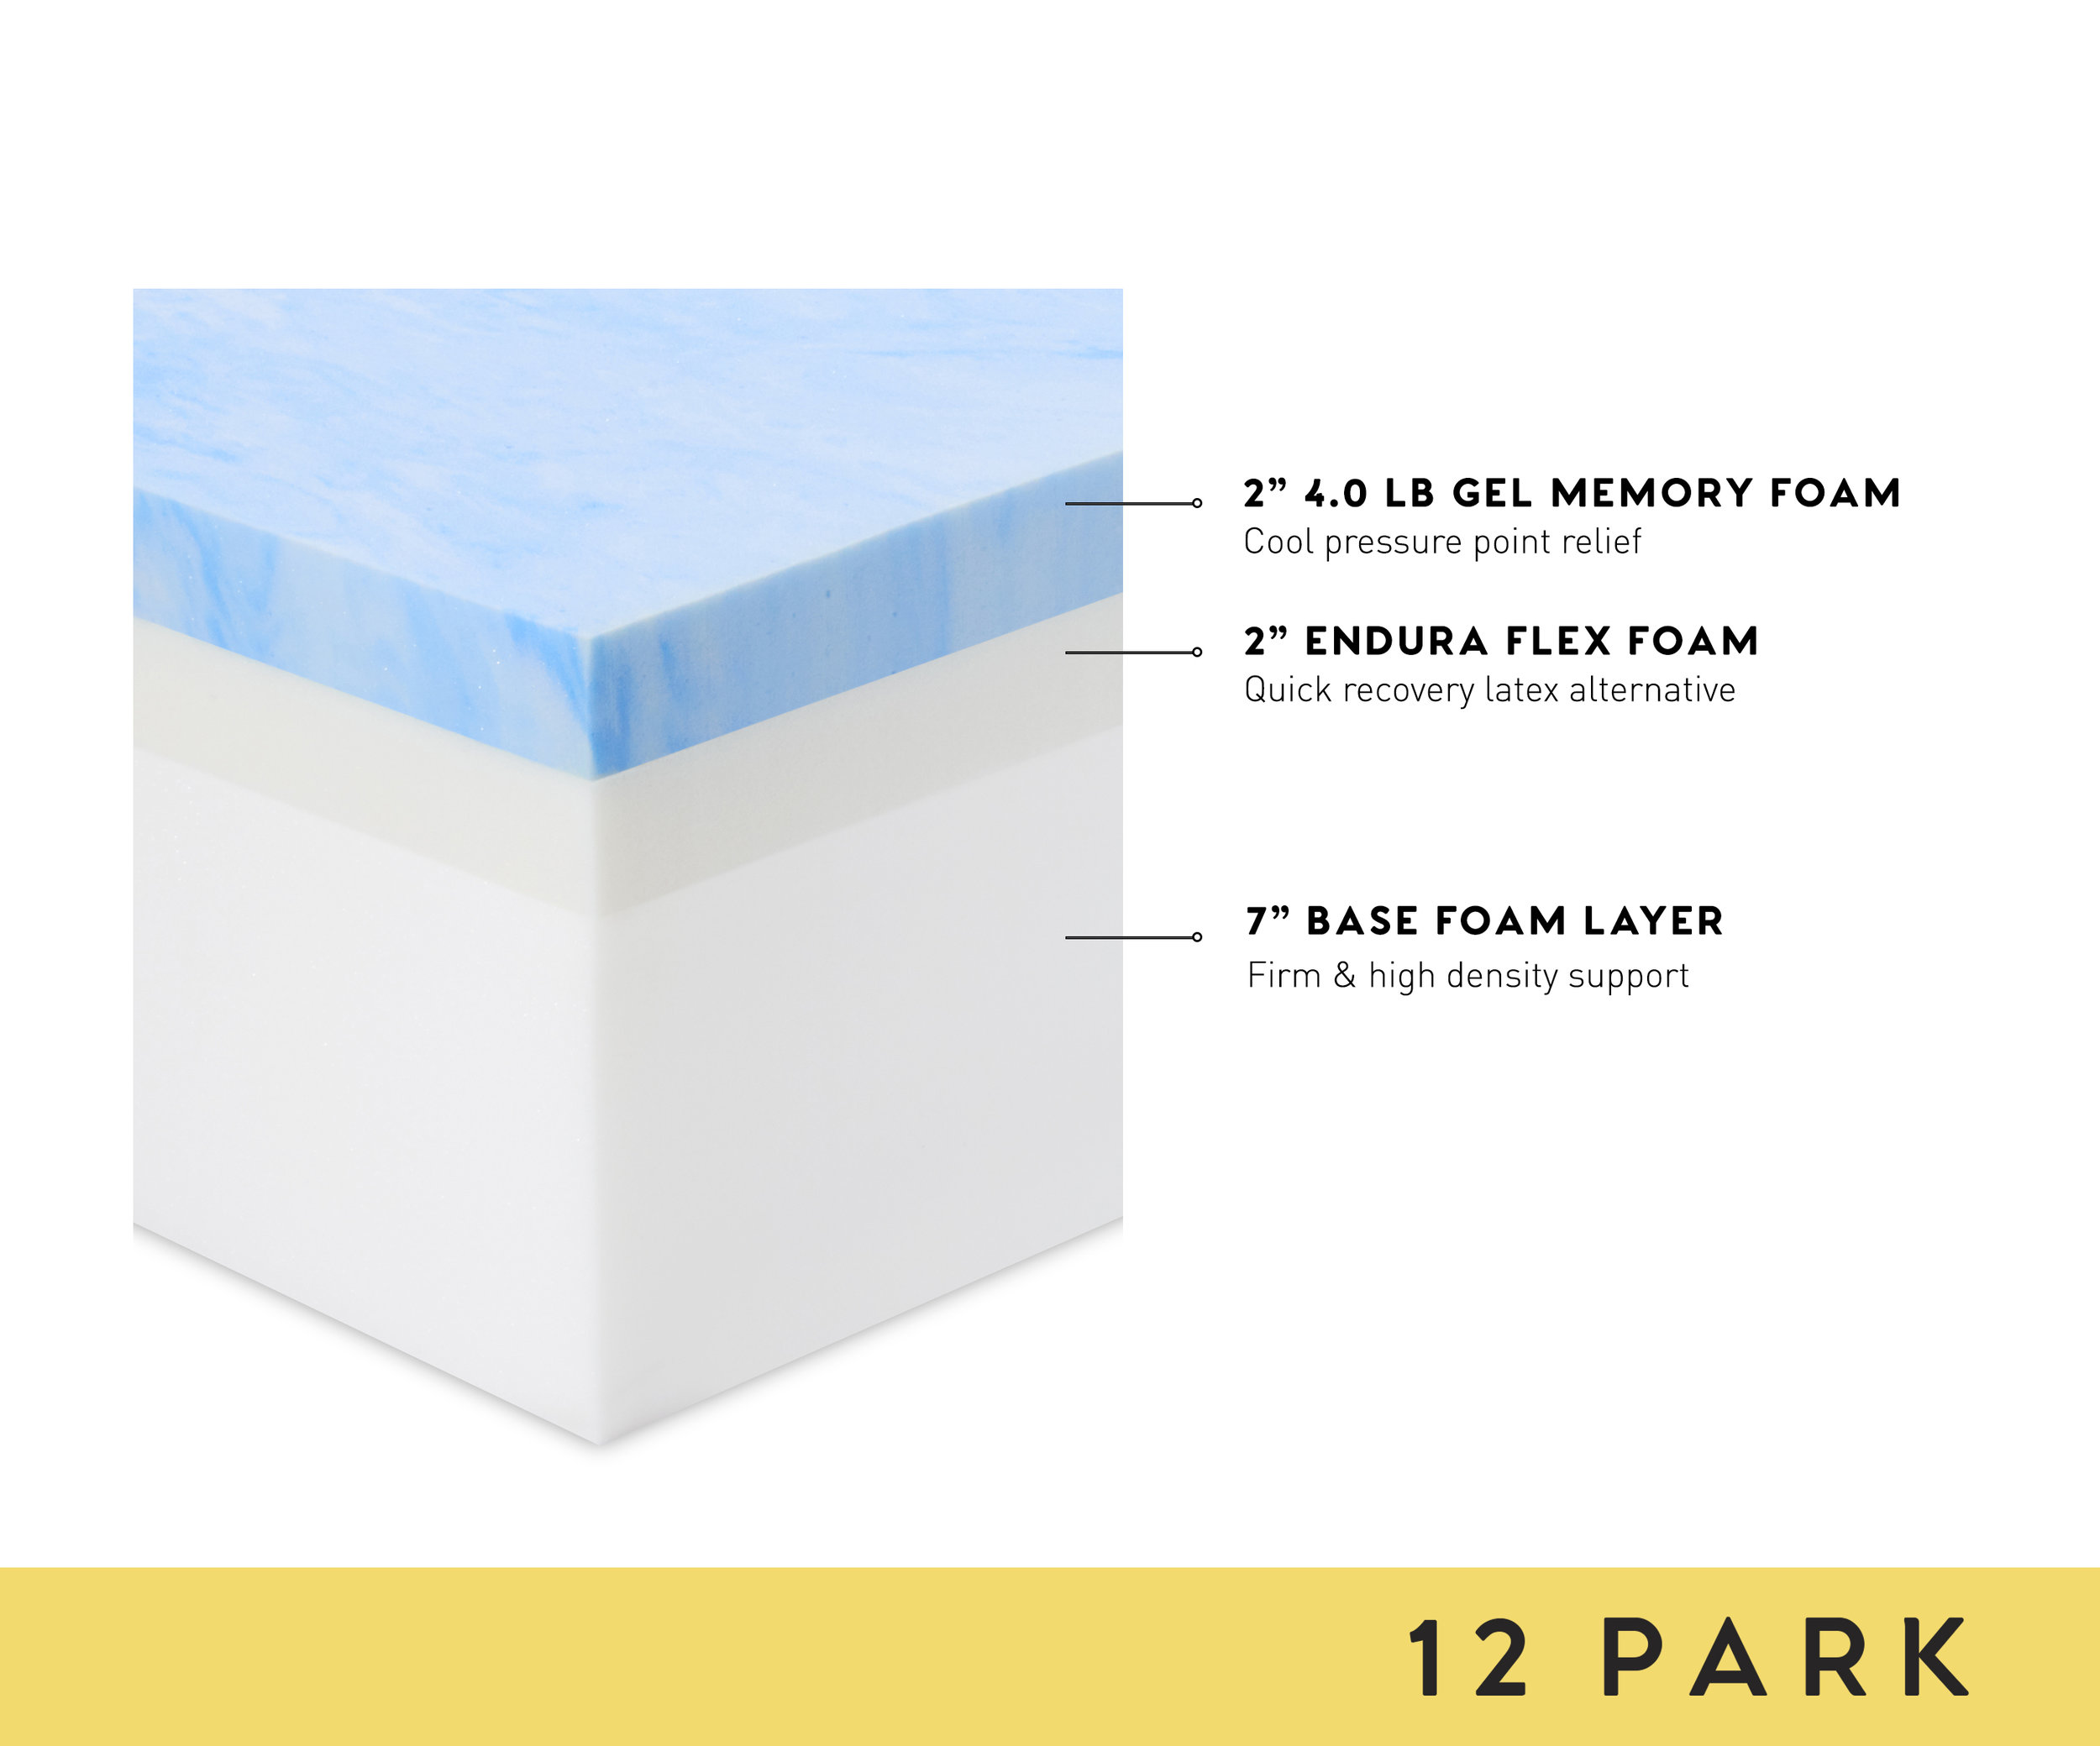 12 park 11 deluxe gel memory foam mattress